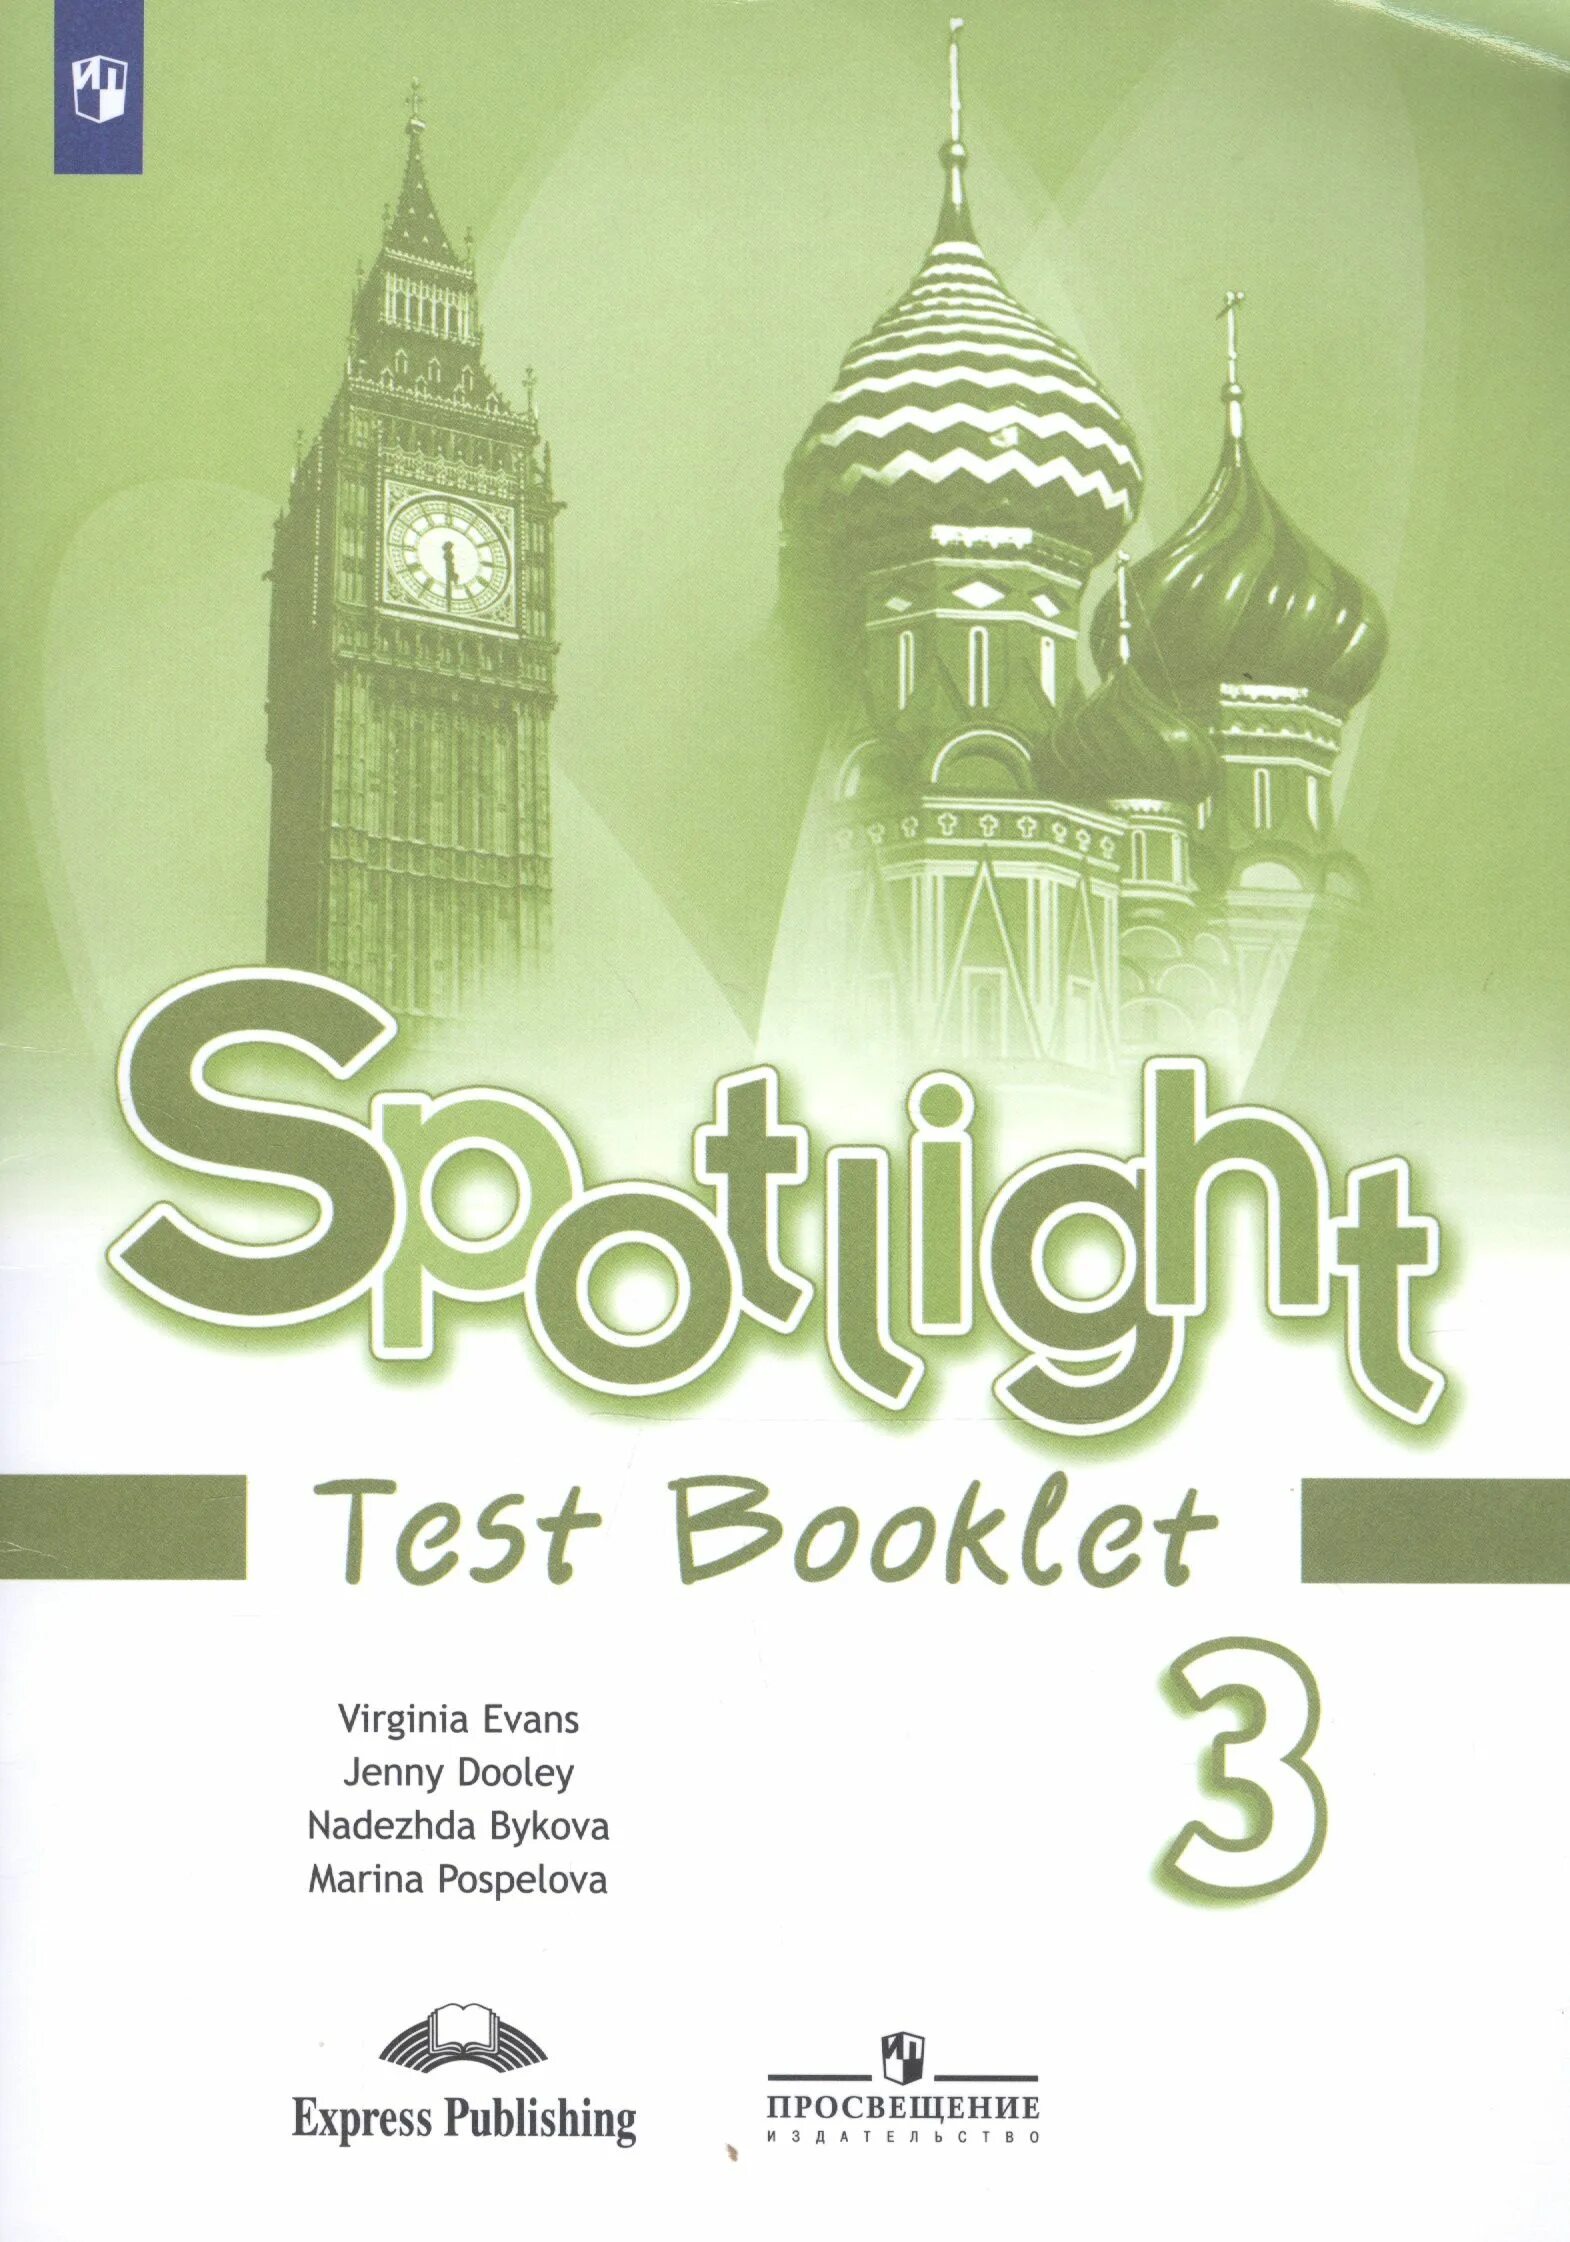 Тест по английскому языку спотлайт 6 класс. Spotlight 5 Test booklet английский язык ваулина ю.е.. Spotlight 5 класс контрольные задания. Spotlight 3 Test booklet. Test booklet 5 класс Spotlight.